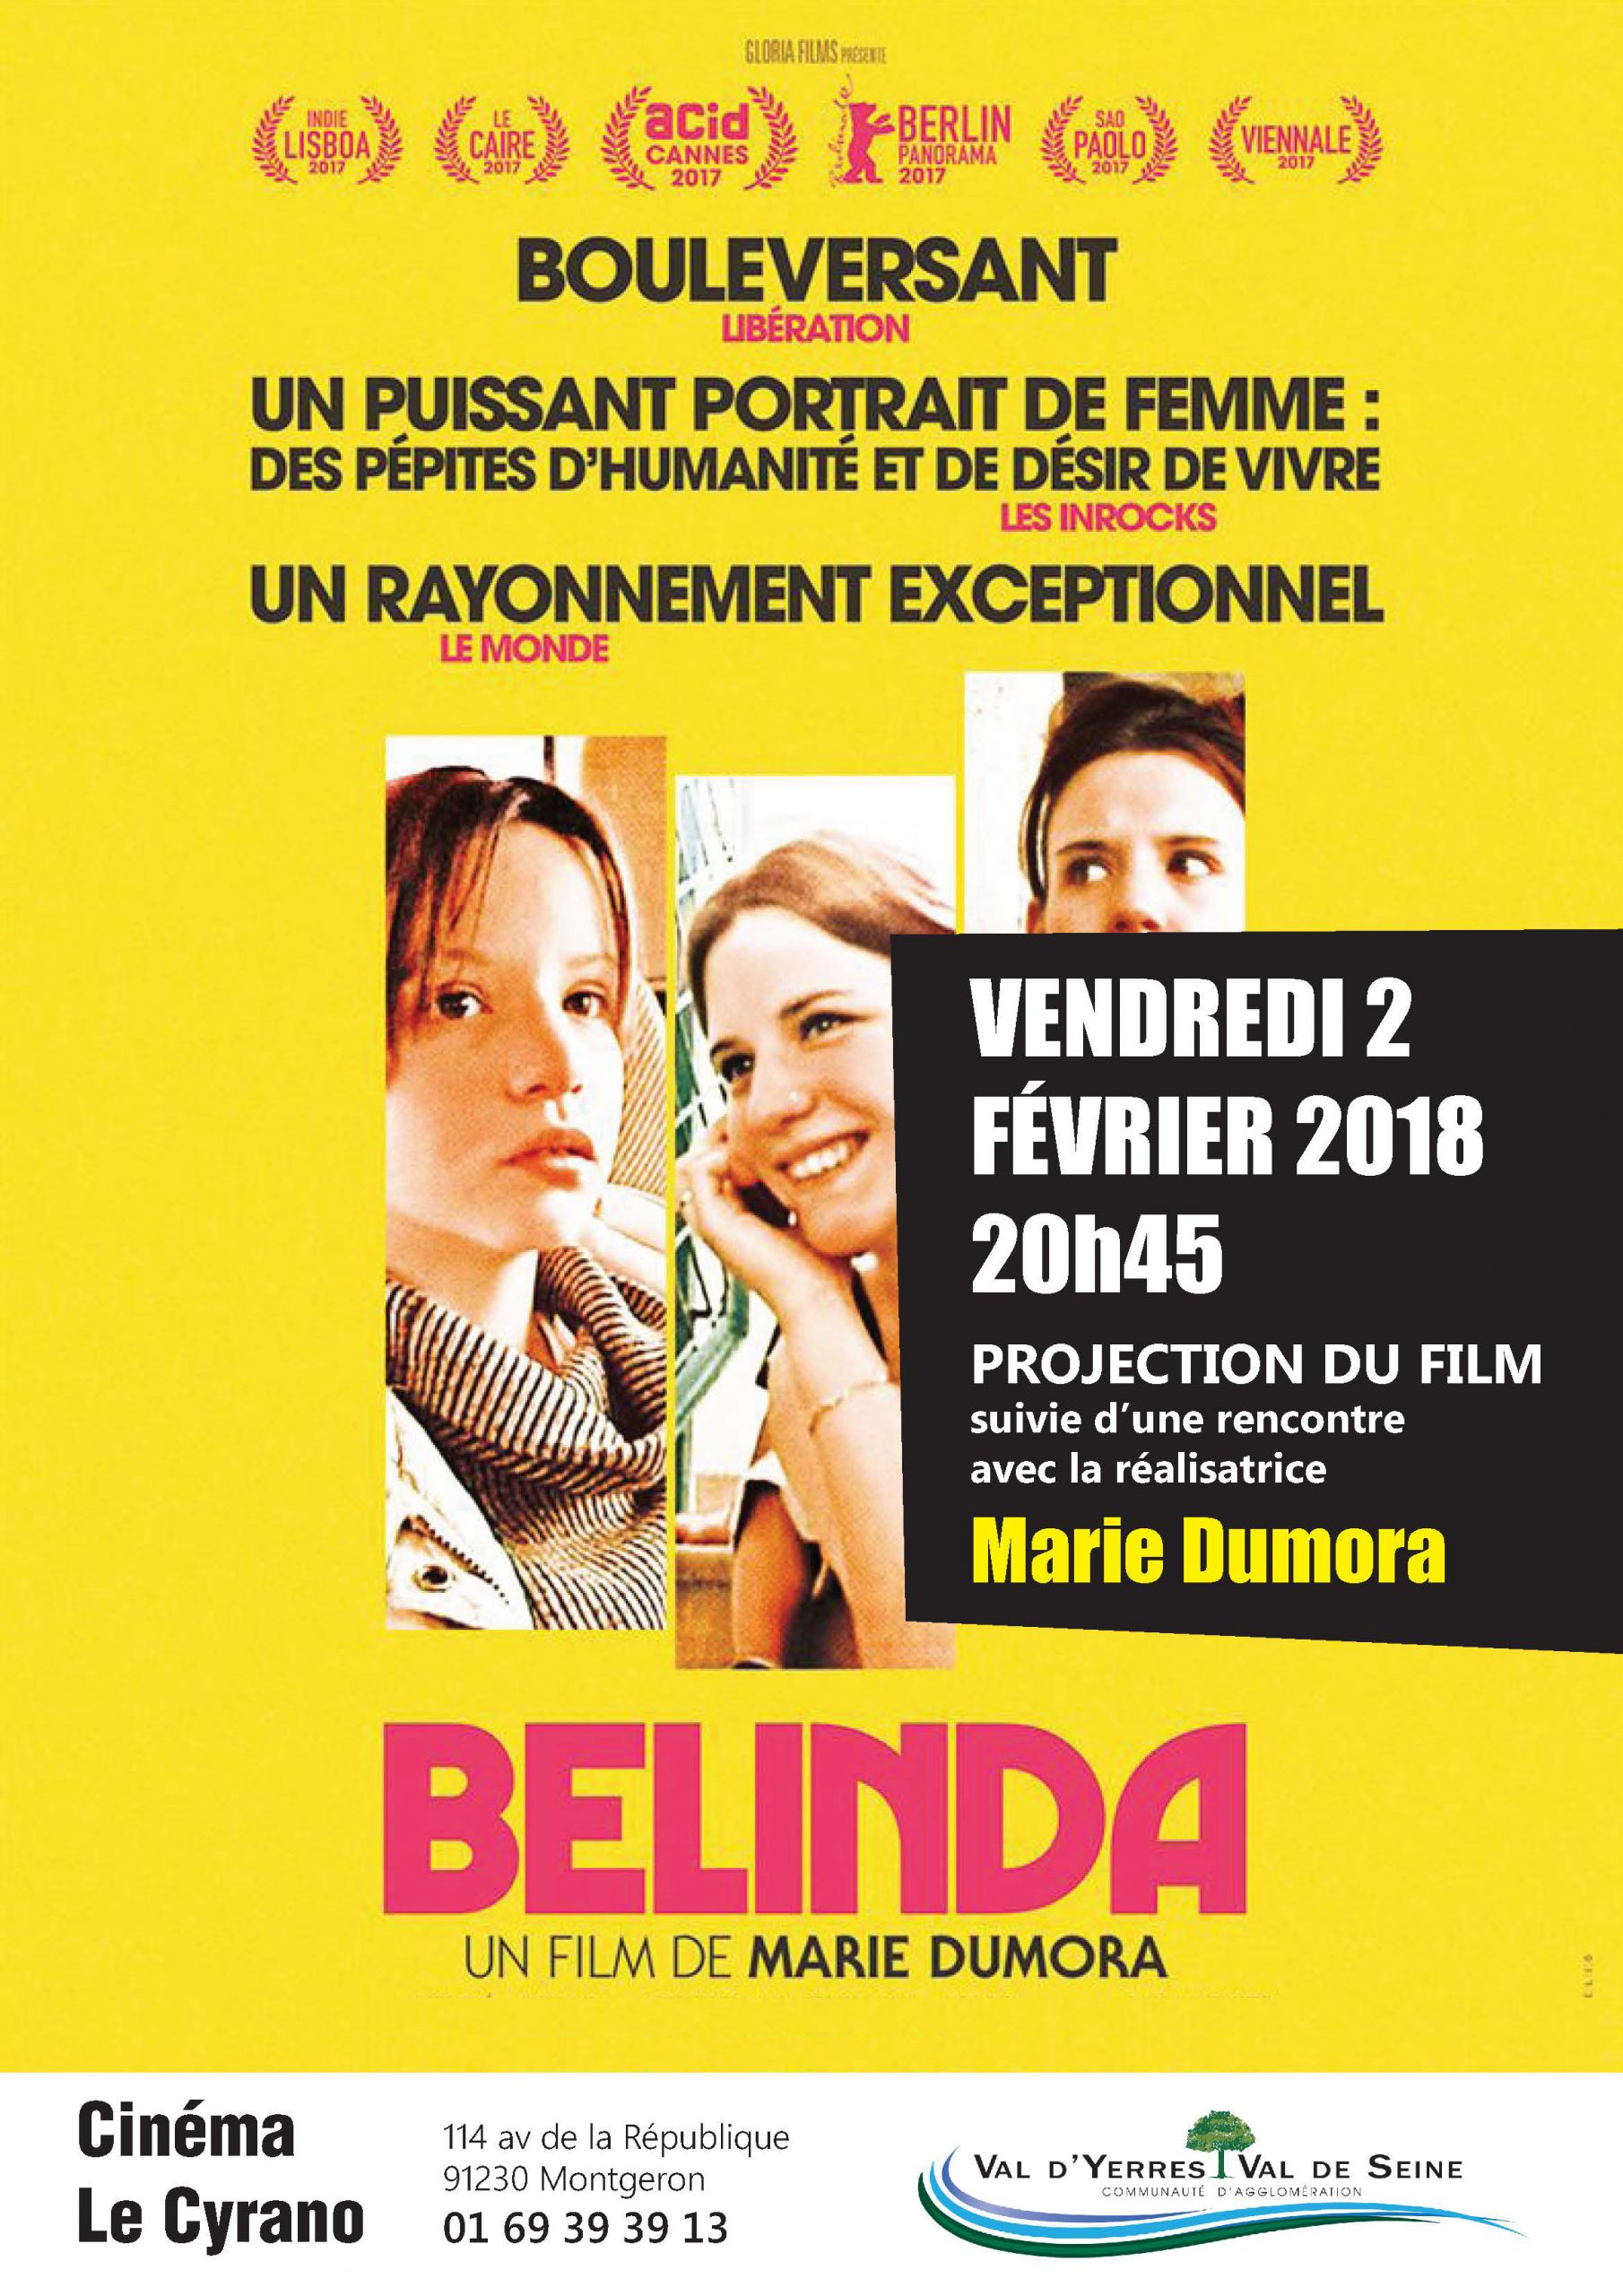 Soirée Cinéma : Projection de « Belinda » suivie d’une rencontre avec la réalisatrice Marie Dumora : vendredi 2 février